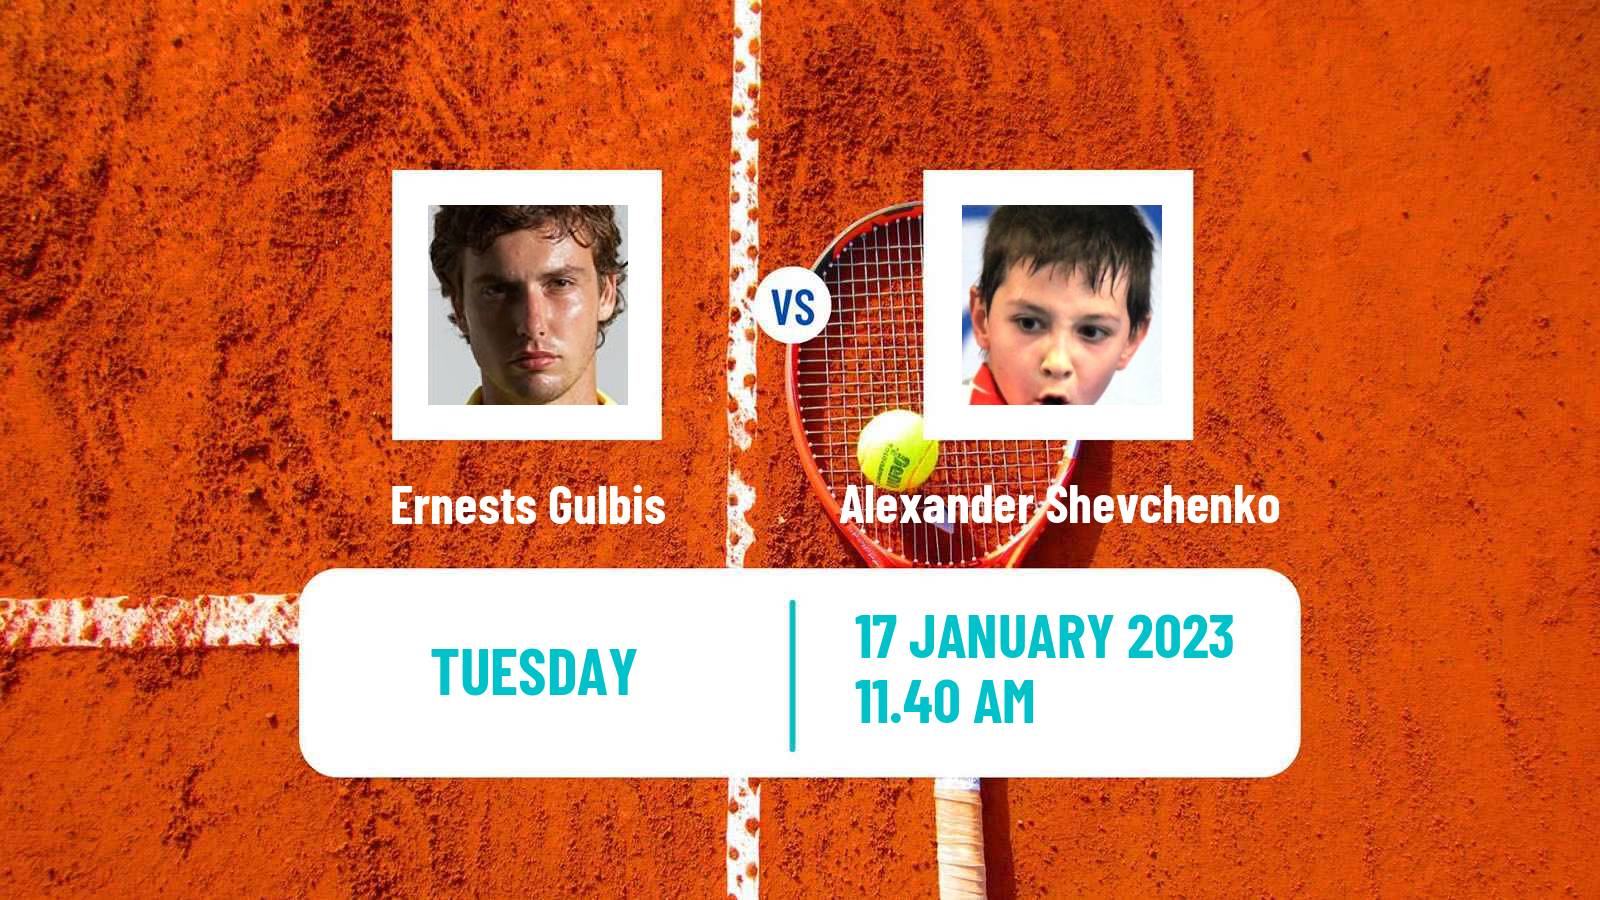 Tennis ATP Challenger Ernests Gulbis - Alexander Shevchenko